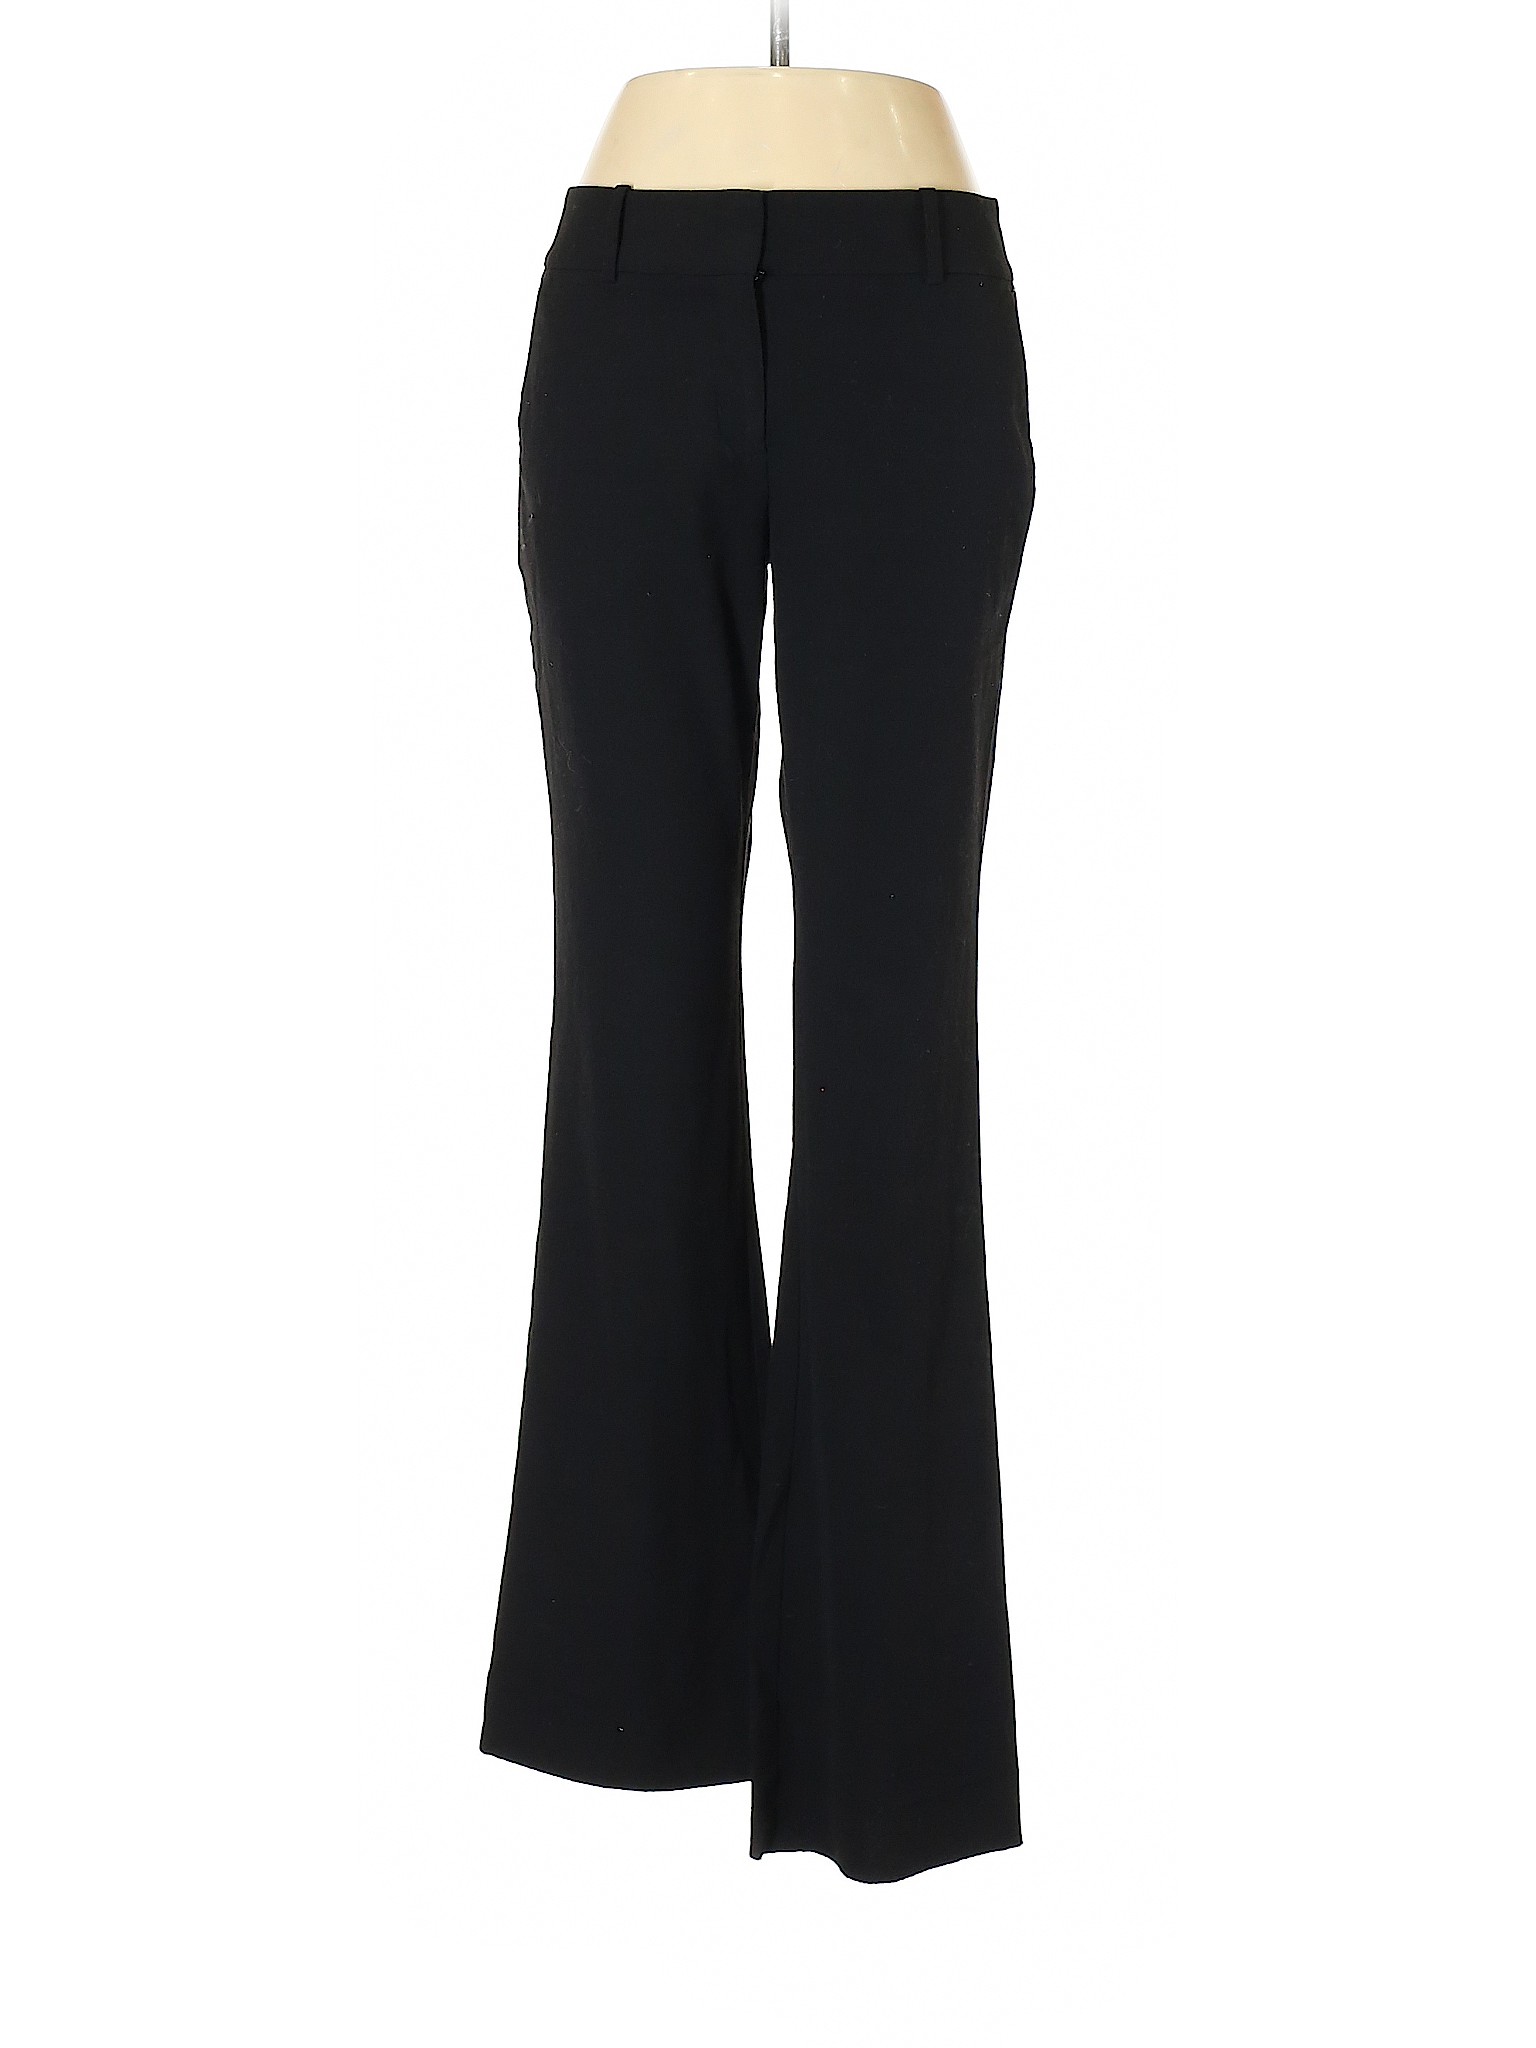 Ann Taylor Women Black Dress Pants 2 | eBay